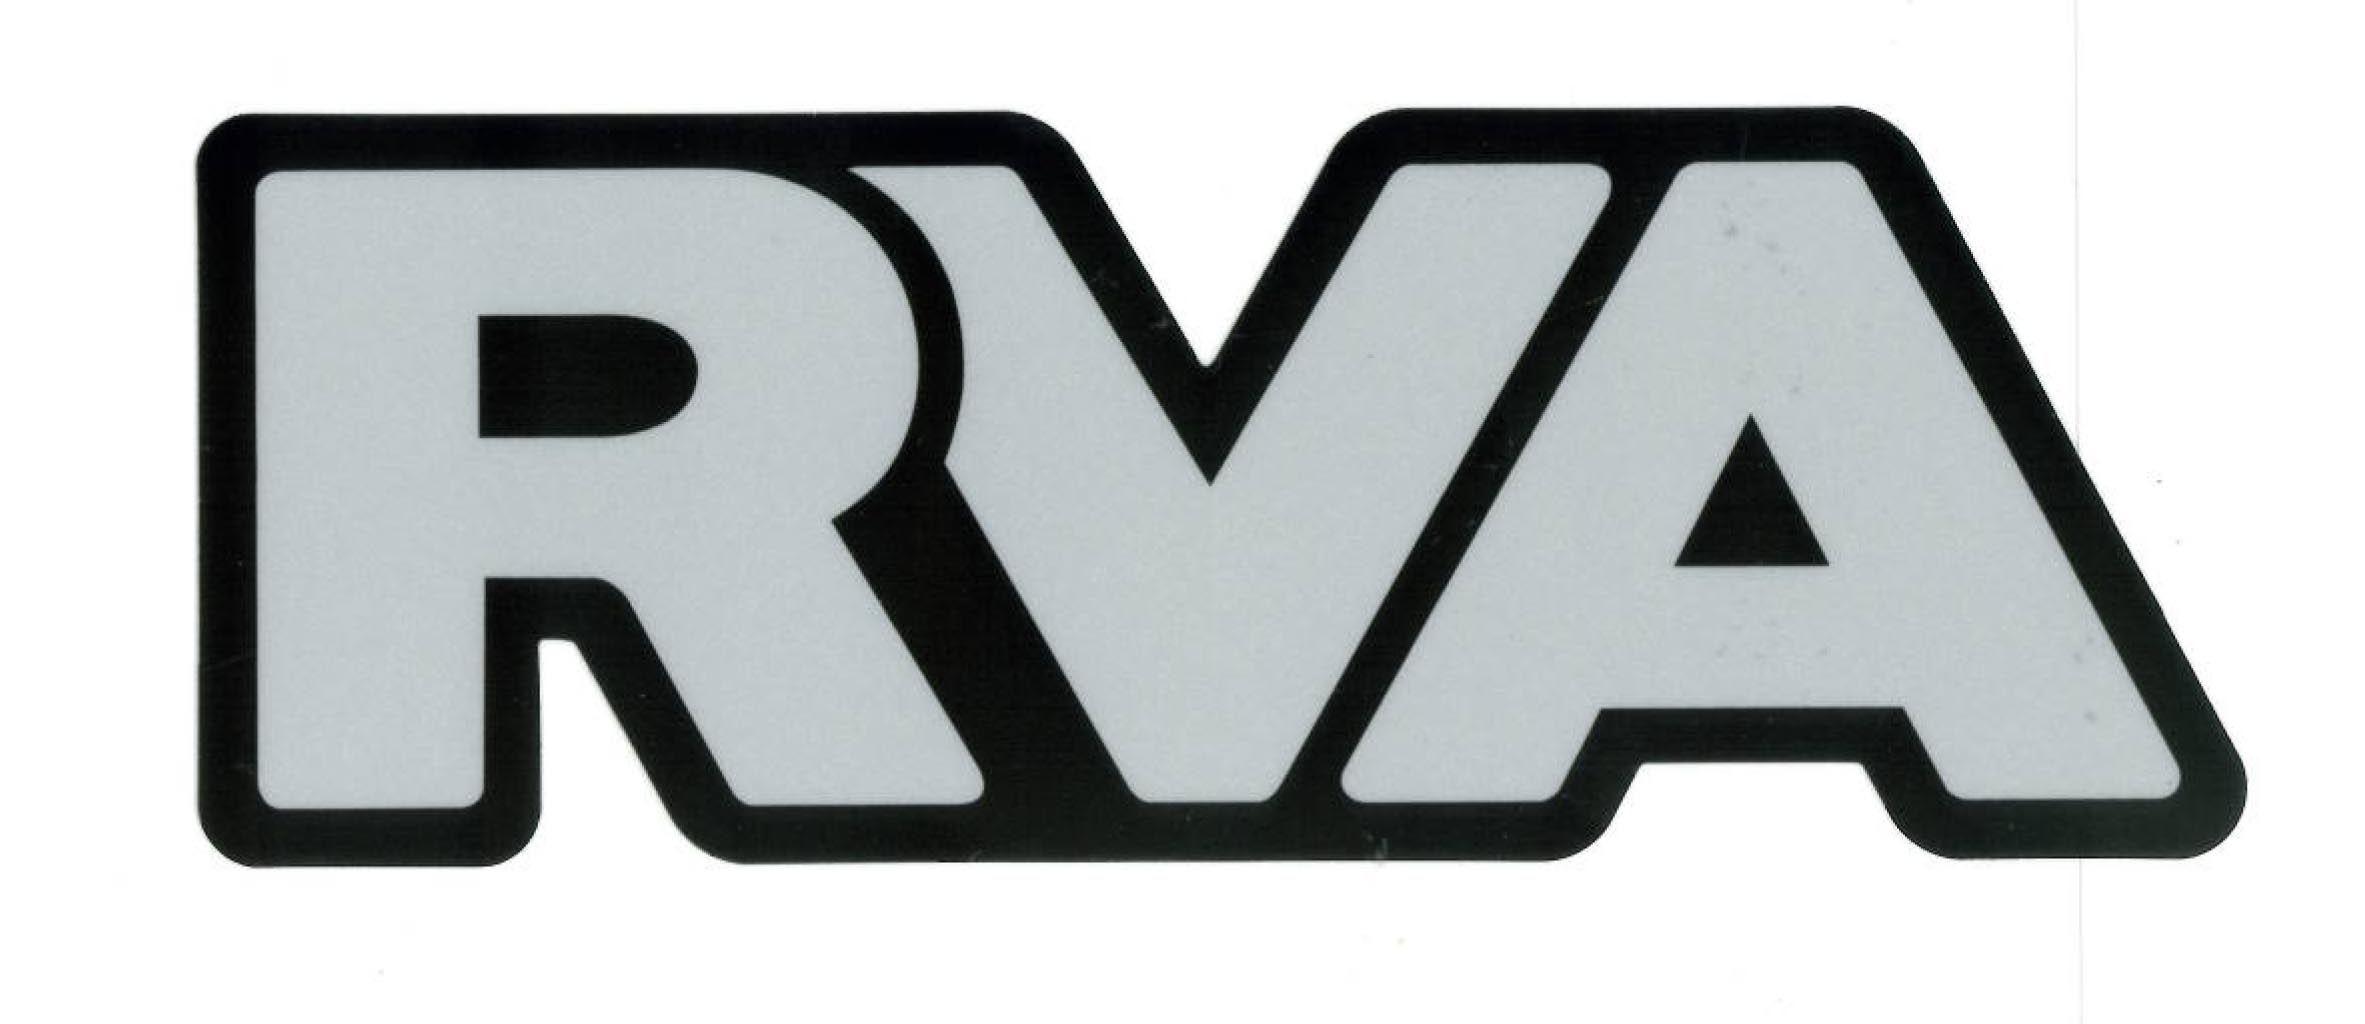 RVA Logo - Rva Logos